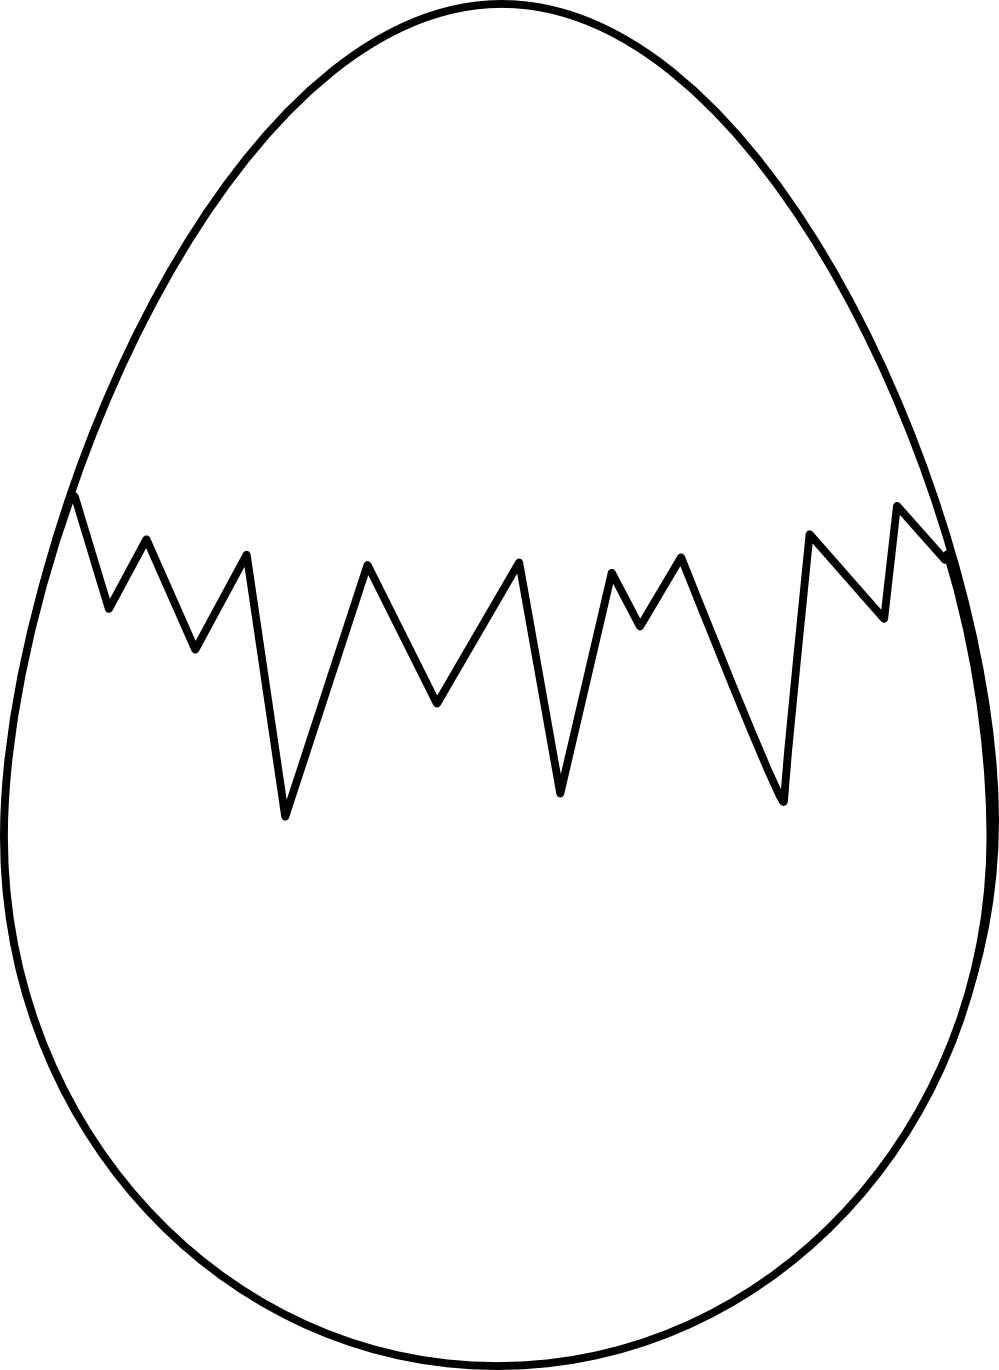 Black And White Of Egg Yolk C